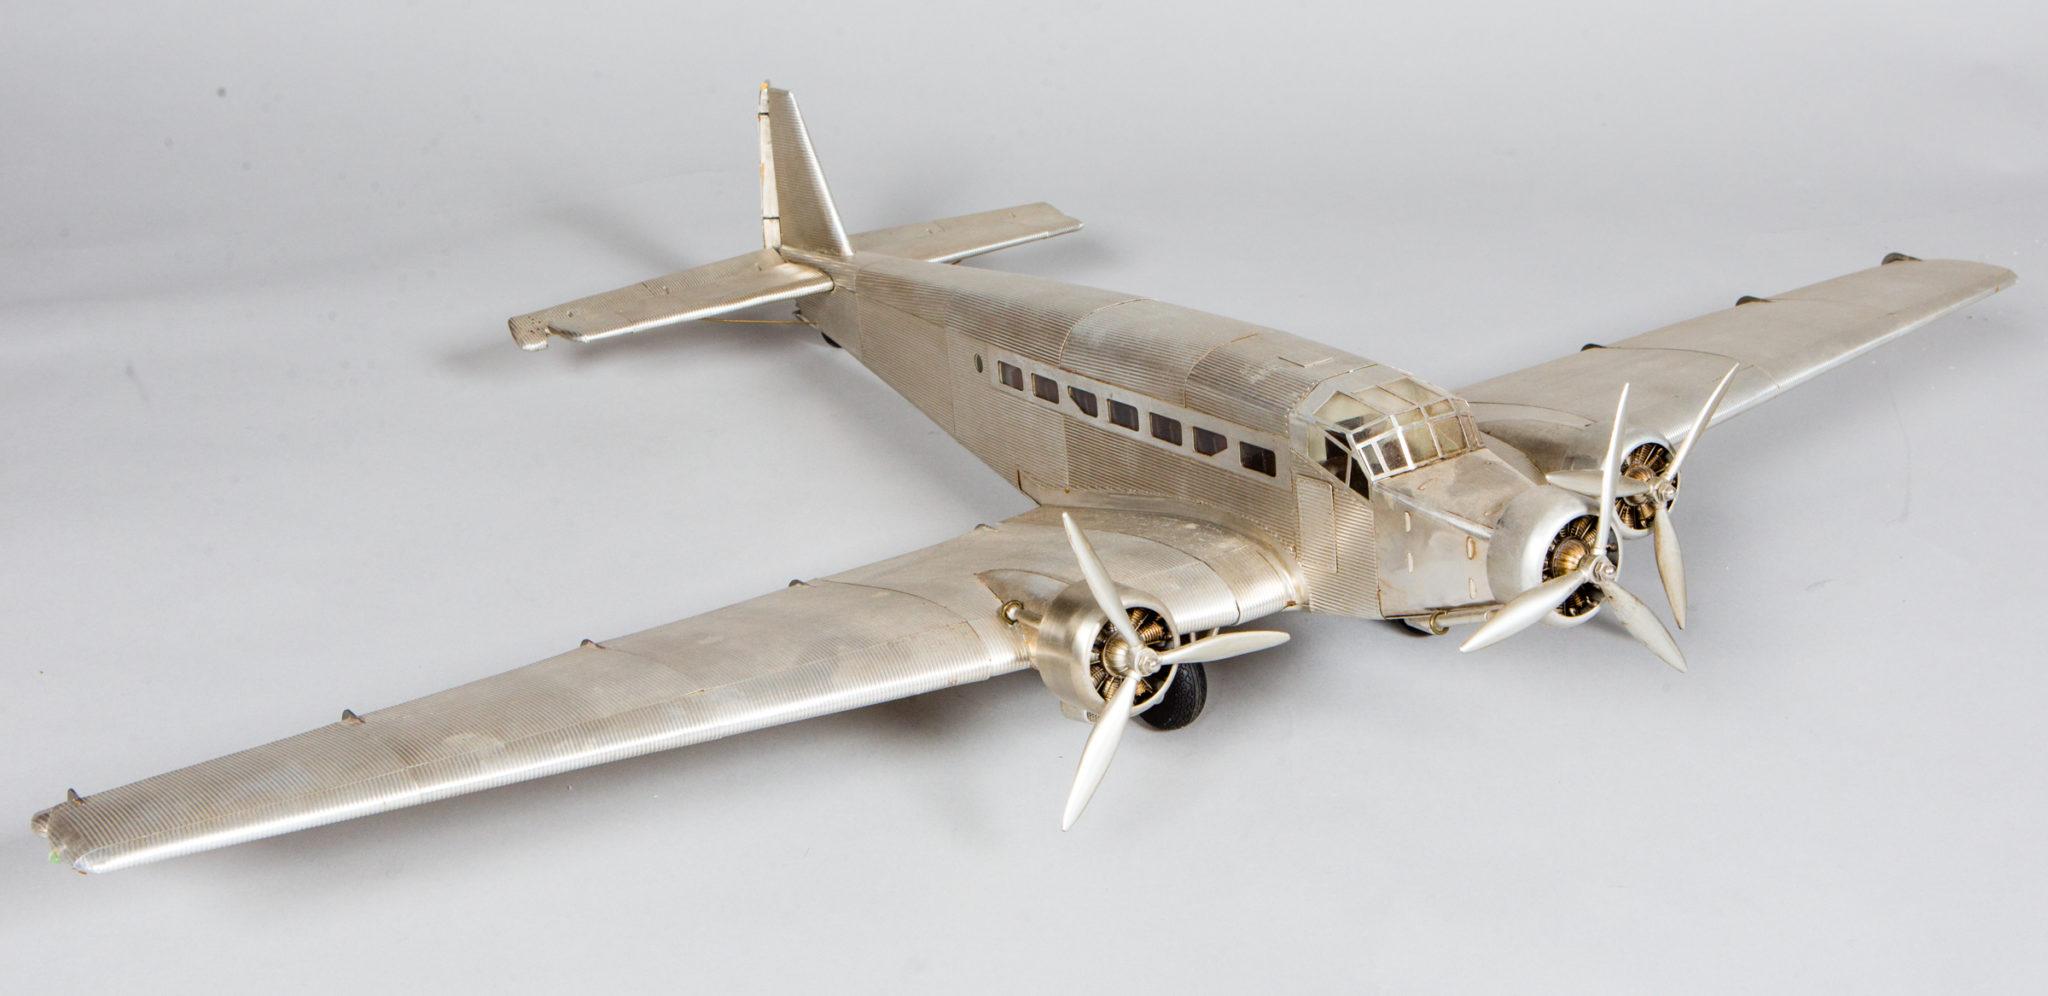 Modèle réduit d'avion en métal avec gouvernes et hélices articulées.